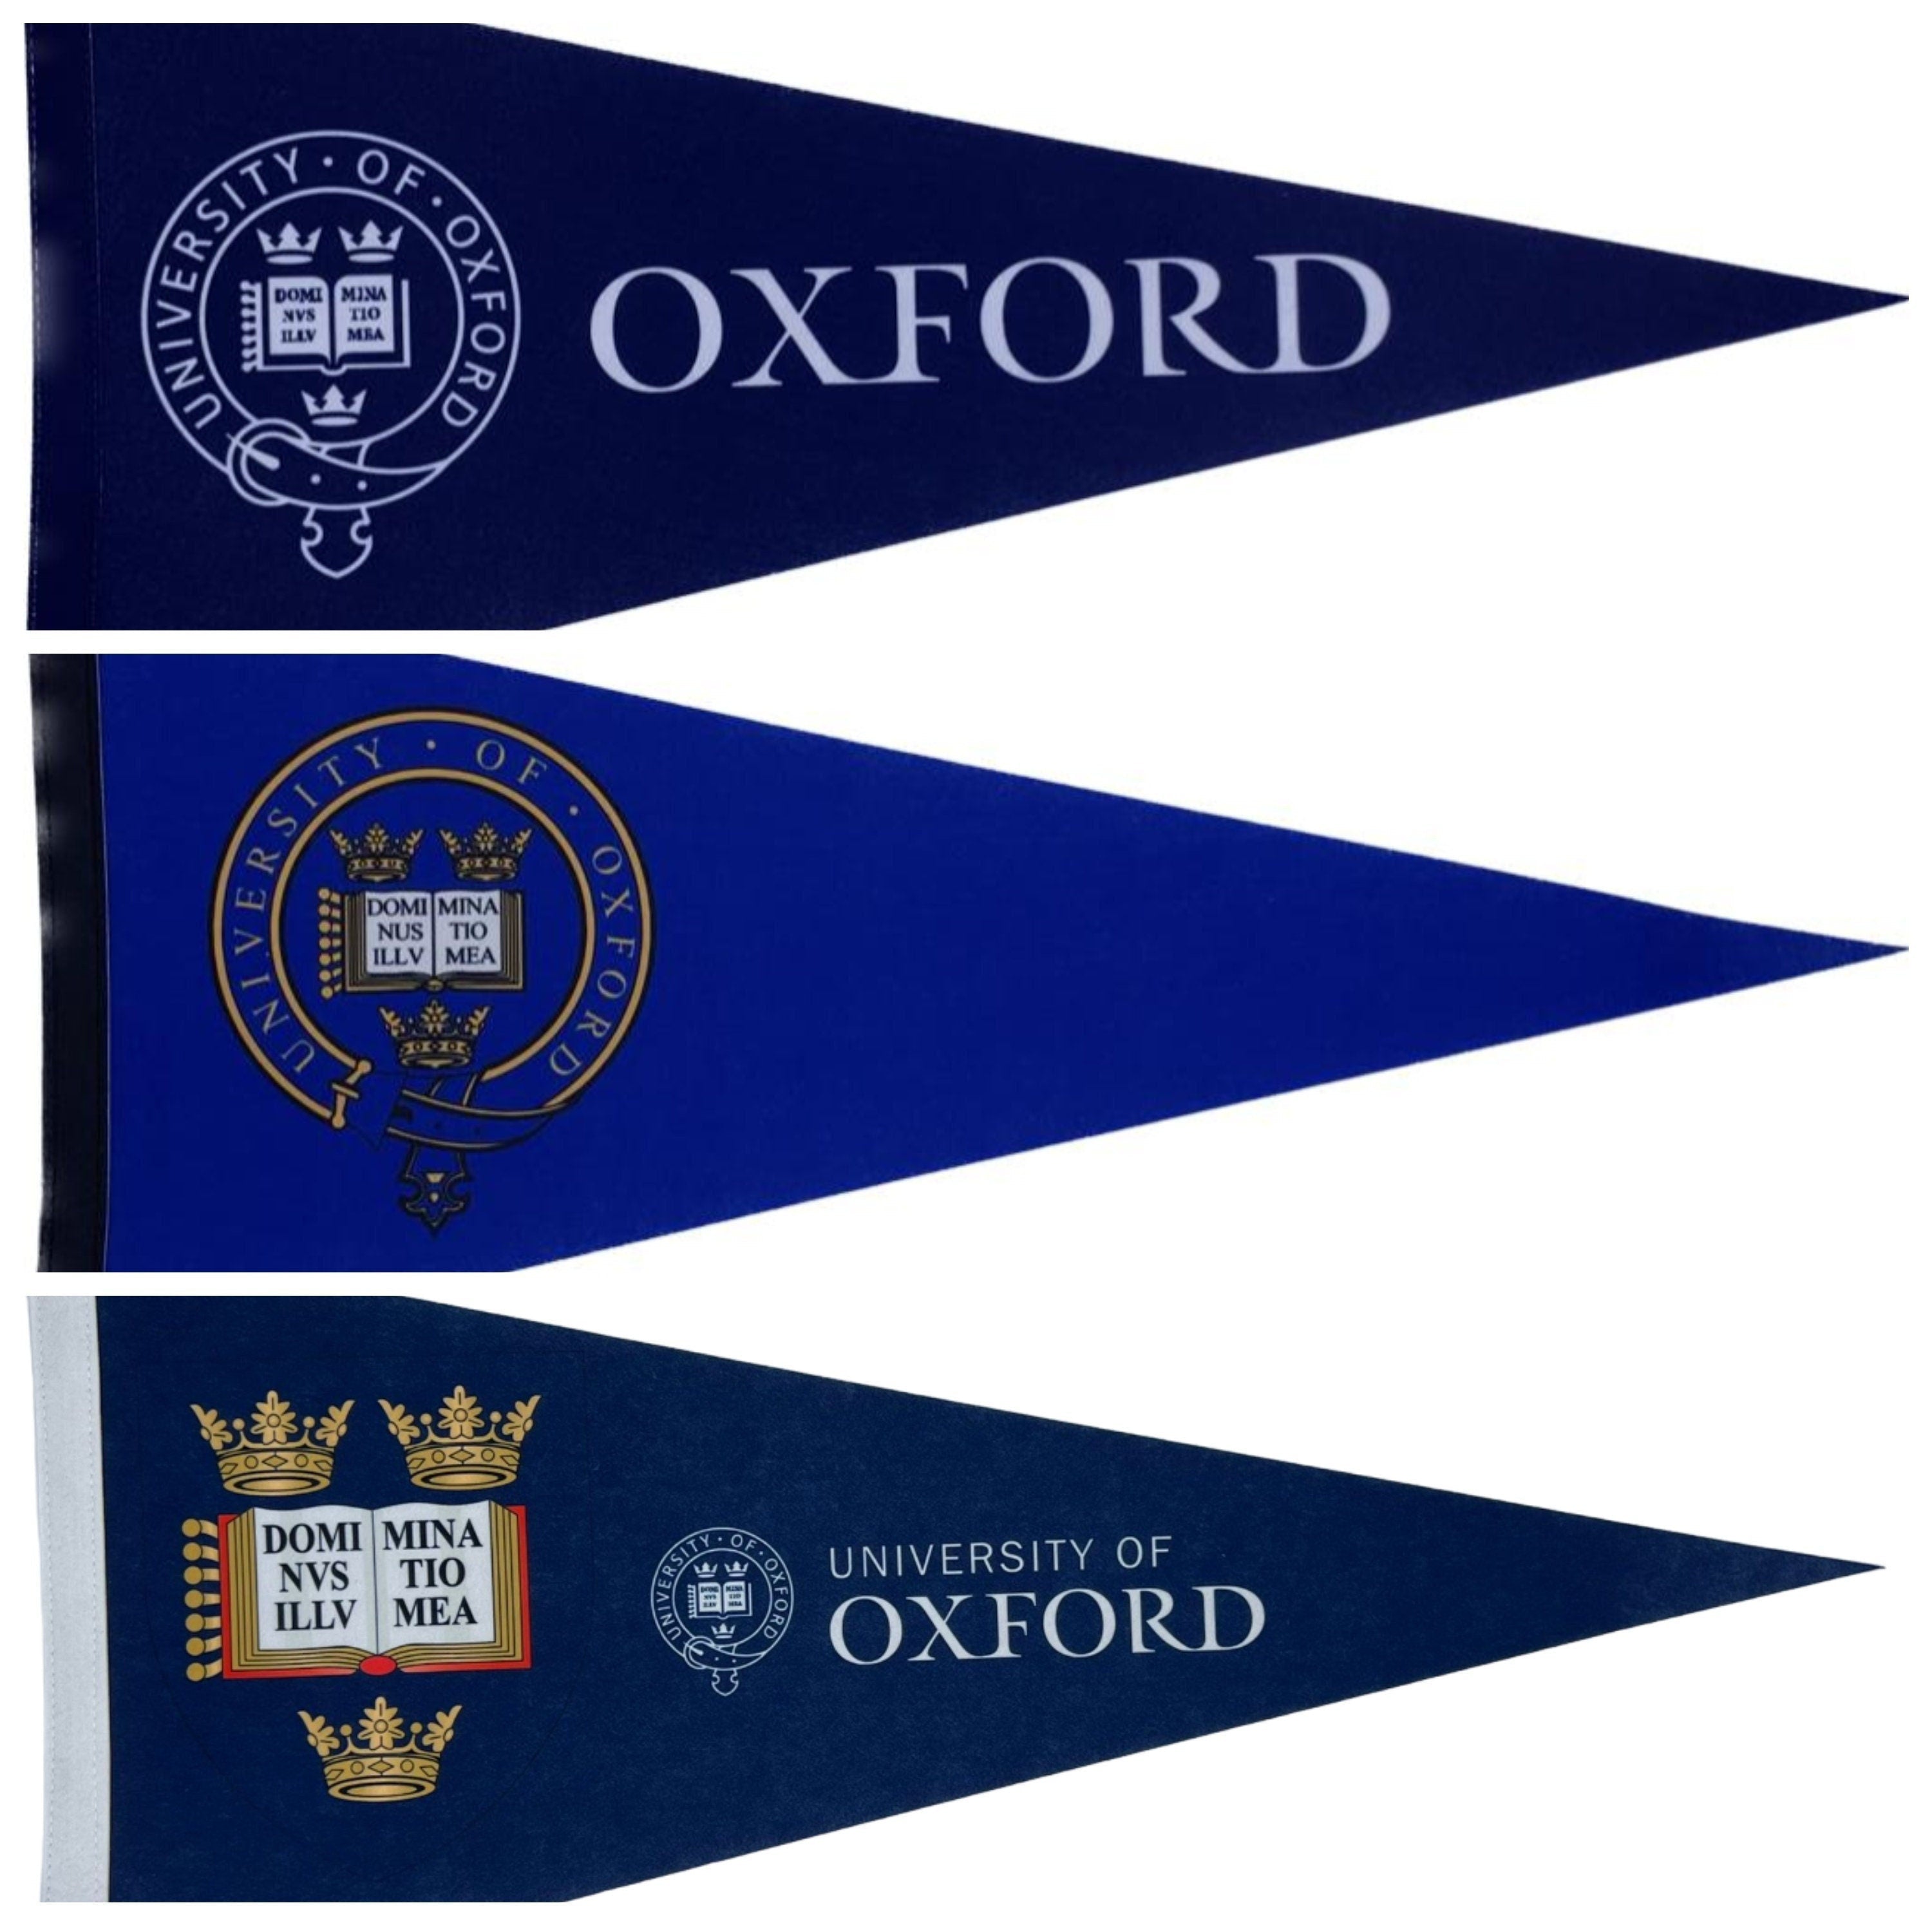 Universiteit van Oxford wimpels vaantje vlaggetje vlag fanion wimpel vlag fahne drapeau Oxford University gift oxford uni vlag uk gift uk ox - Original